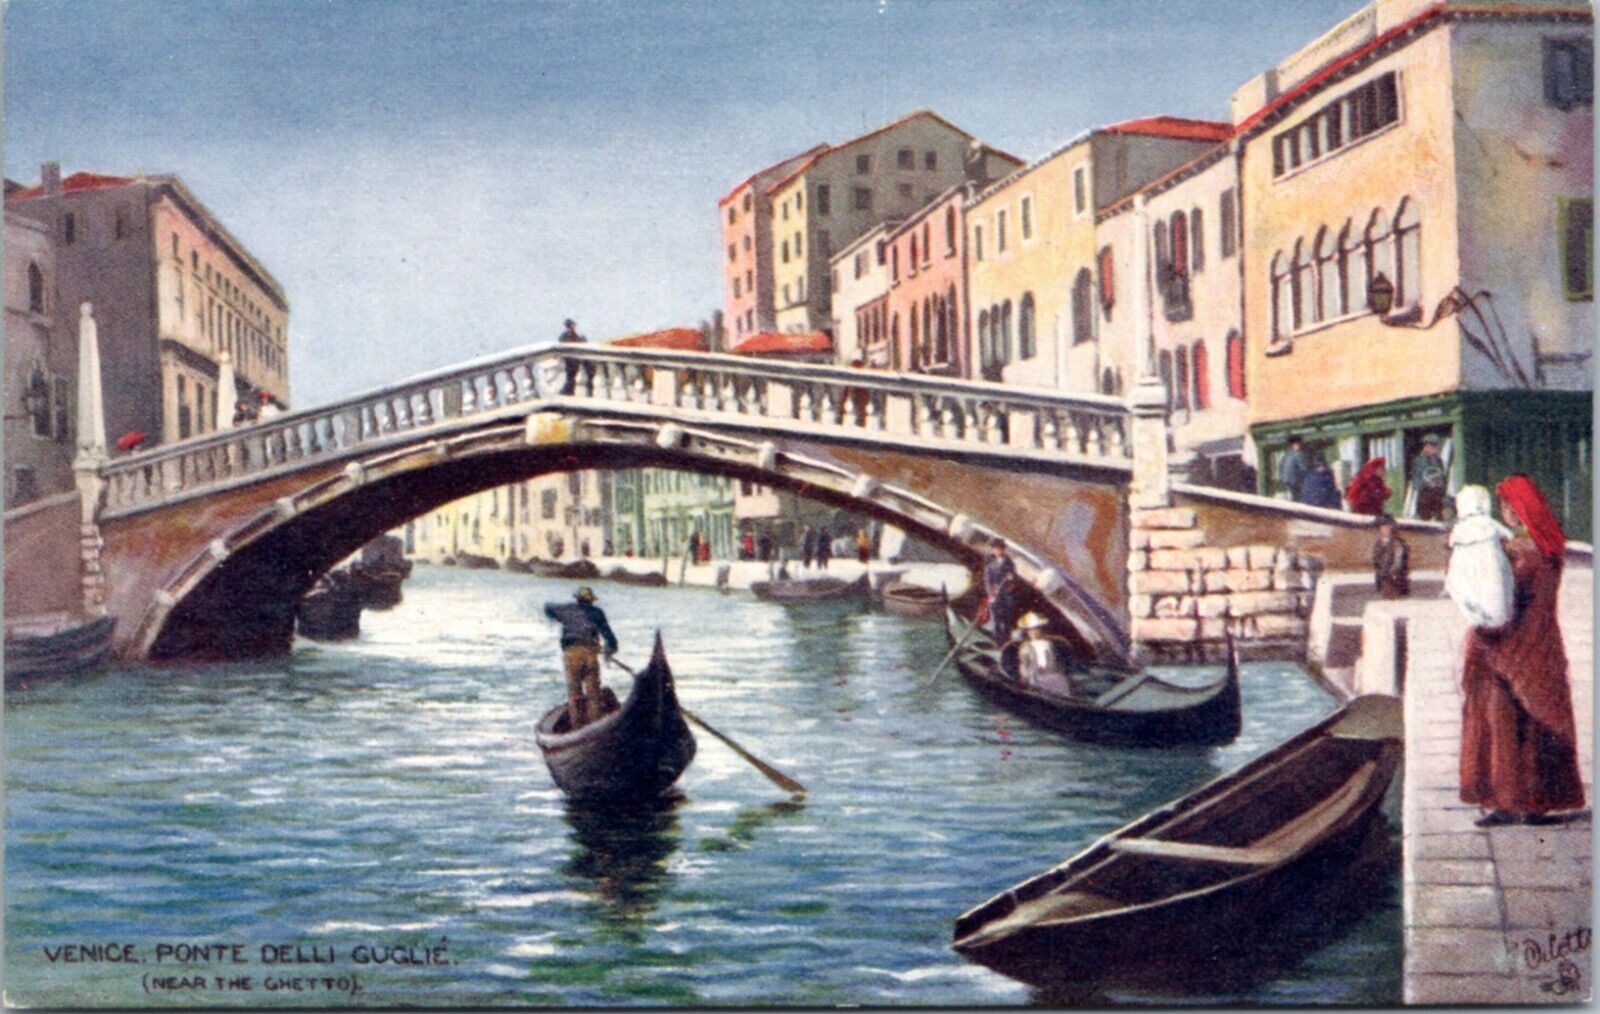 Postcard Italy Venice Tuck 7037 - Ponte Delli Guglie